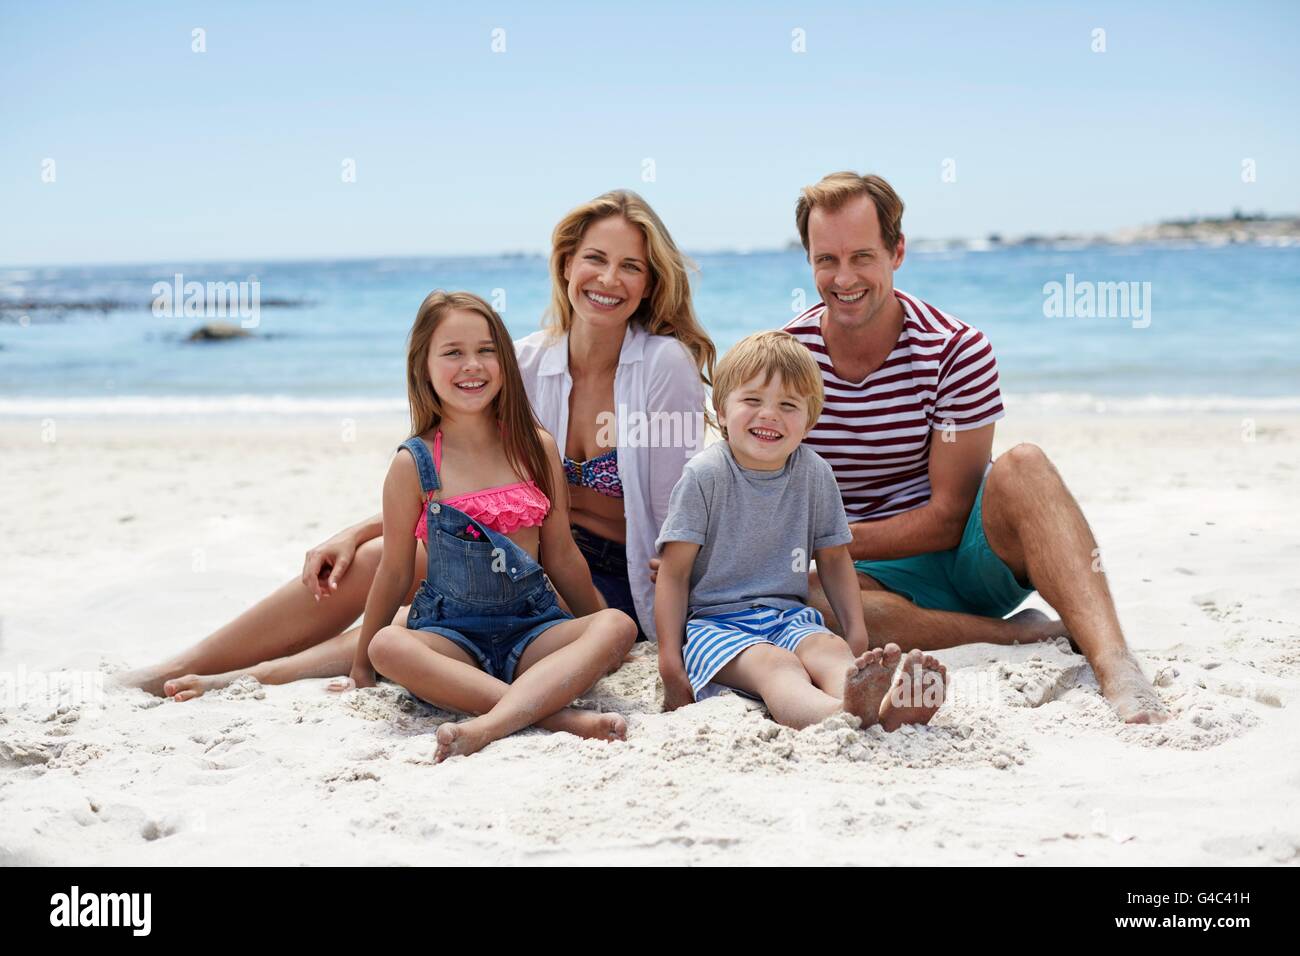 Modello rilasciato. Famiglia con due bambini seduti sulla spiaggia, ritratto. Foto Stock